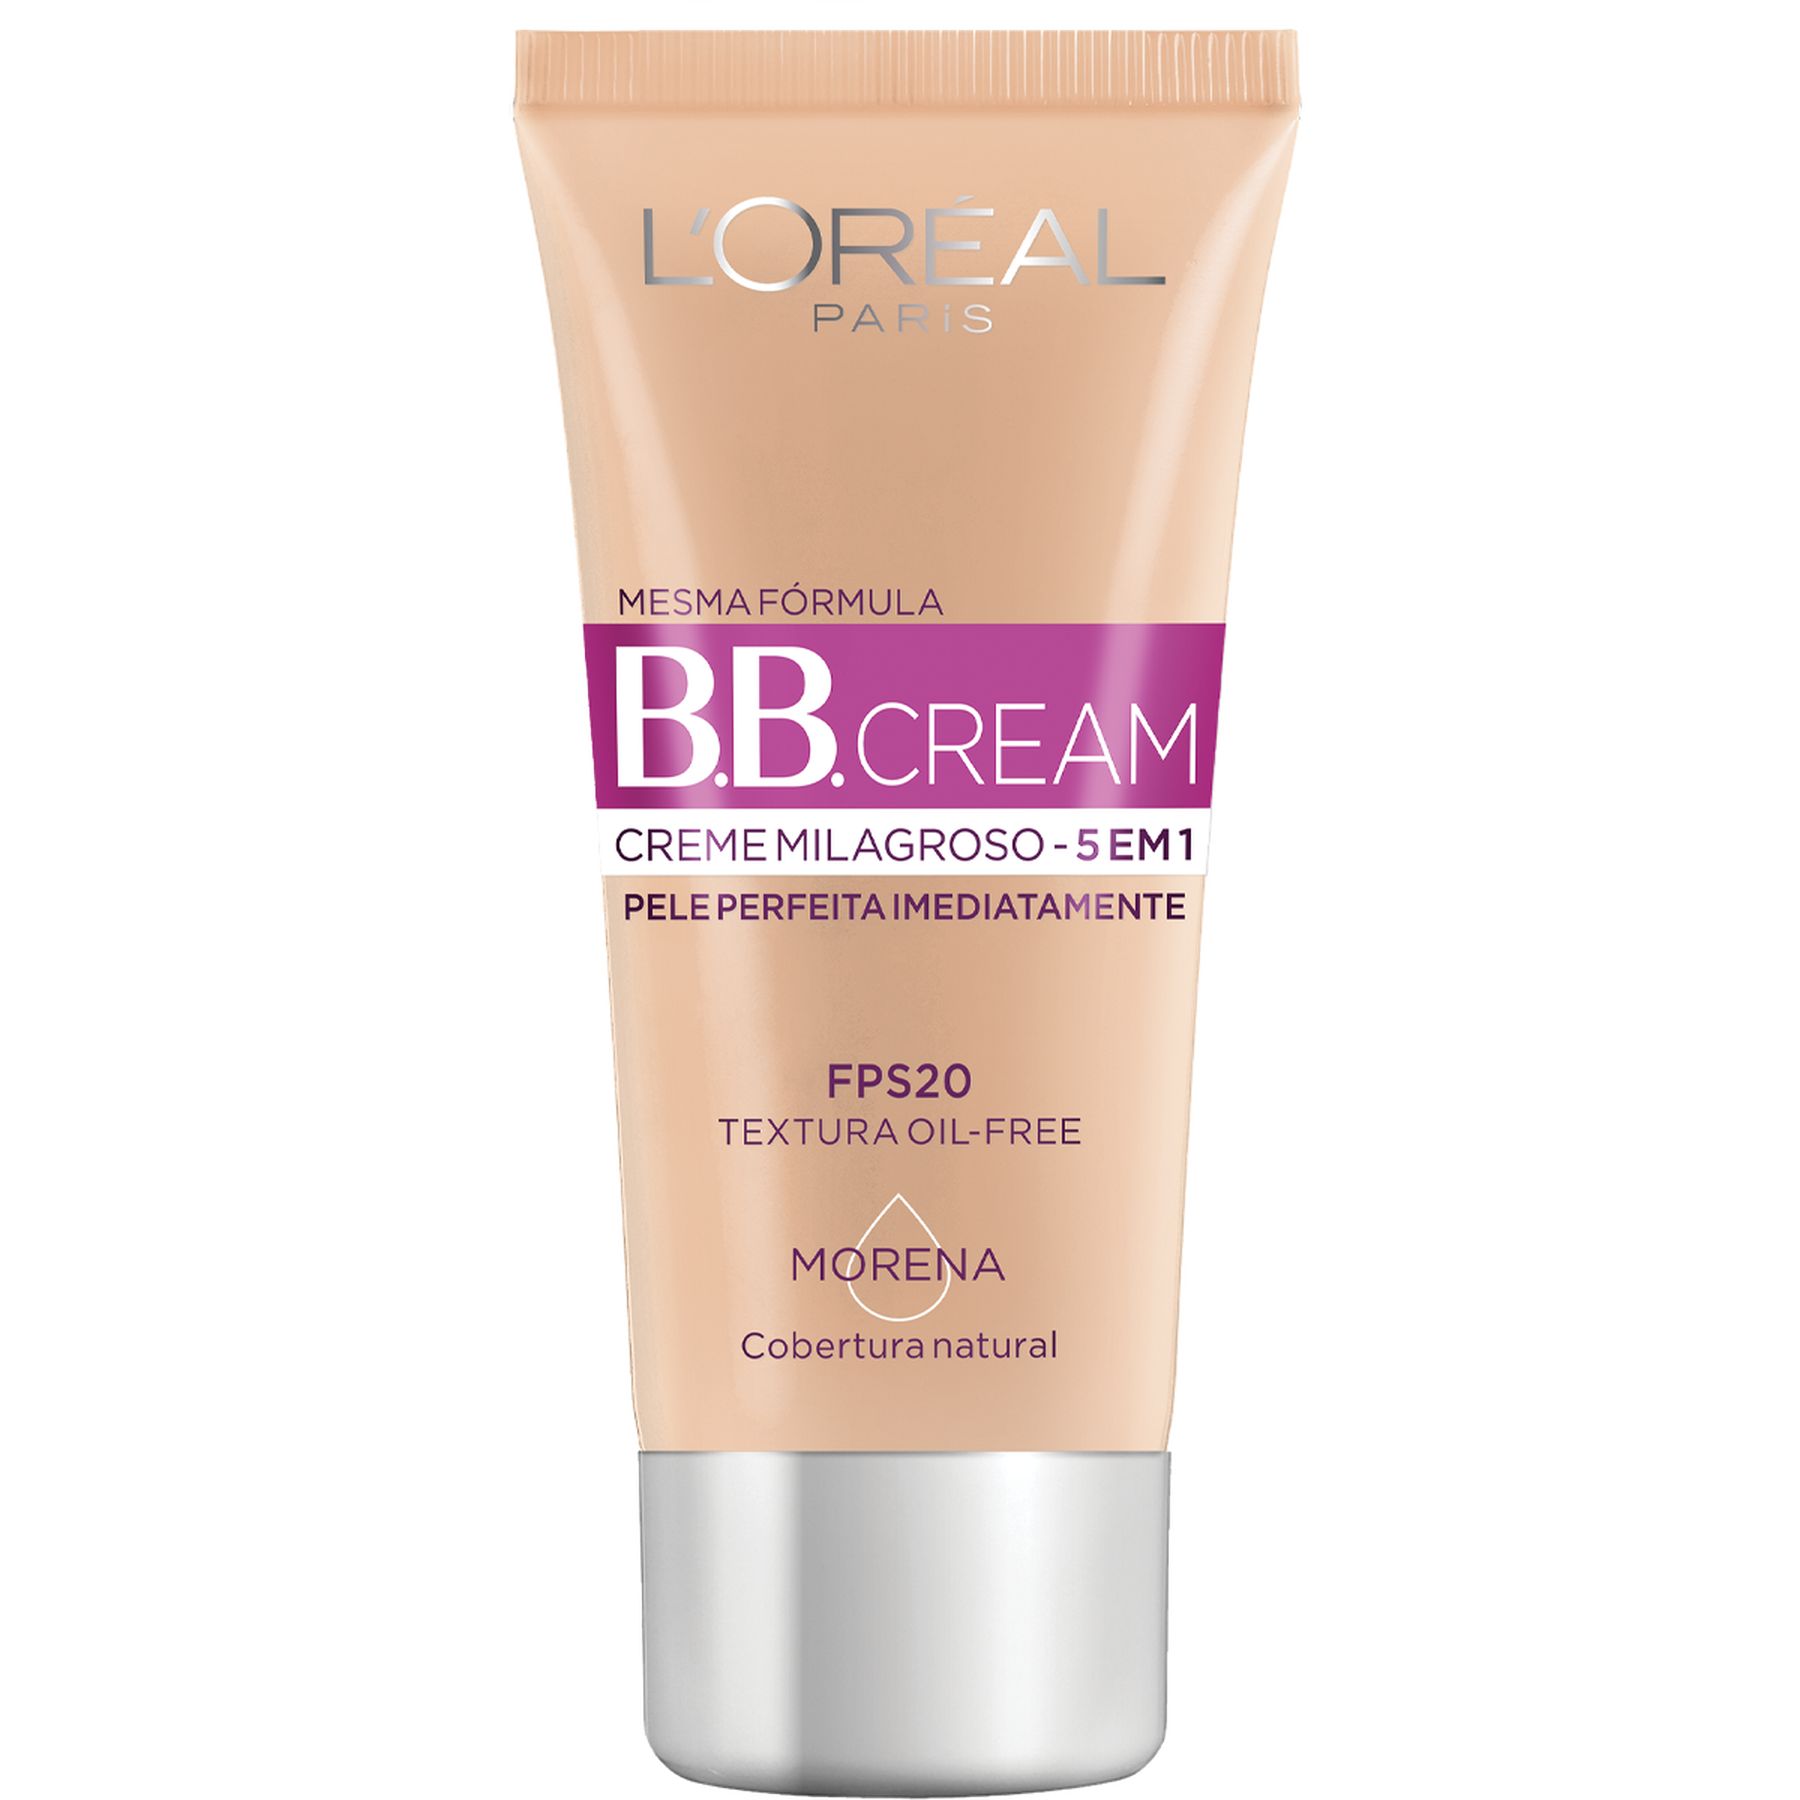 BB Cream Creme Milagroso 5 em 1 FPS20 Morena L'oréal Paris 30ml